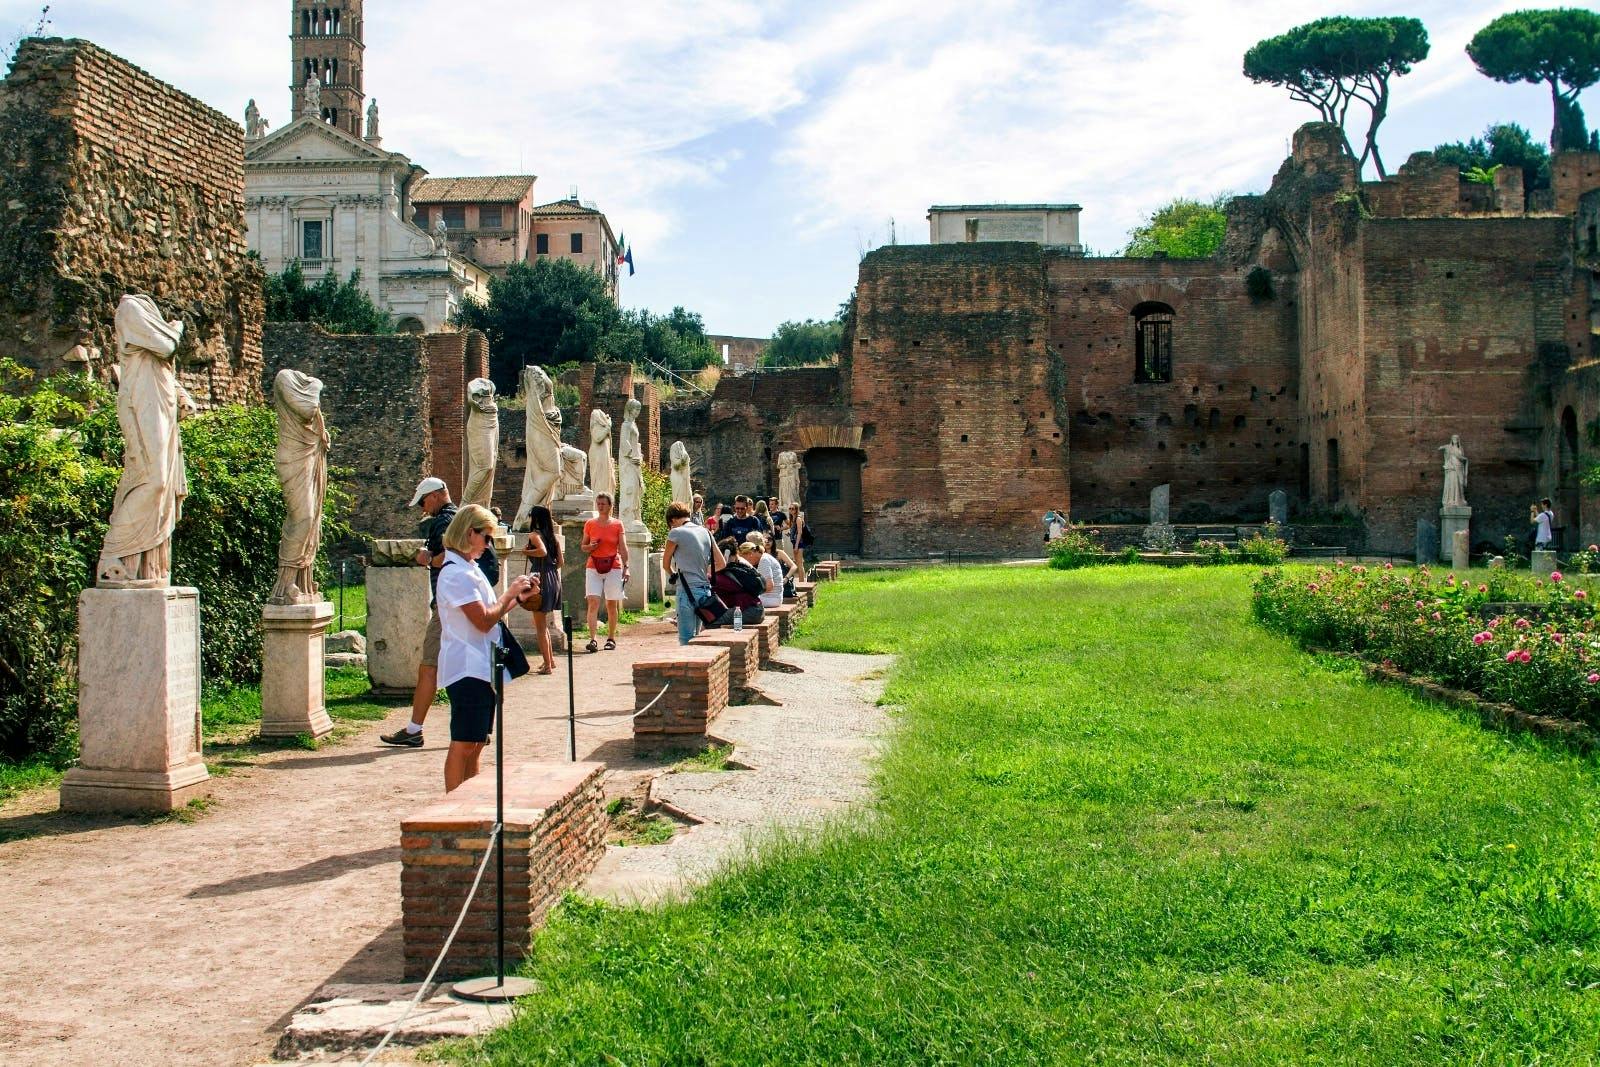 Rome op een dag met Vaticaan, Colosseum en historisch centrum